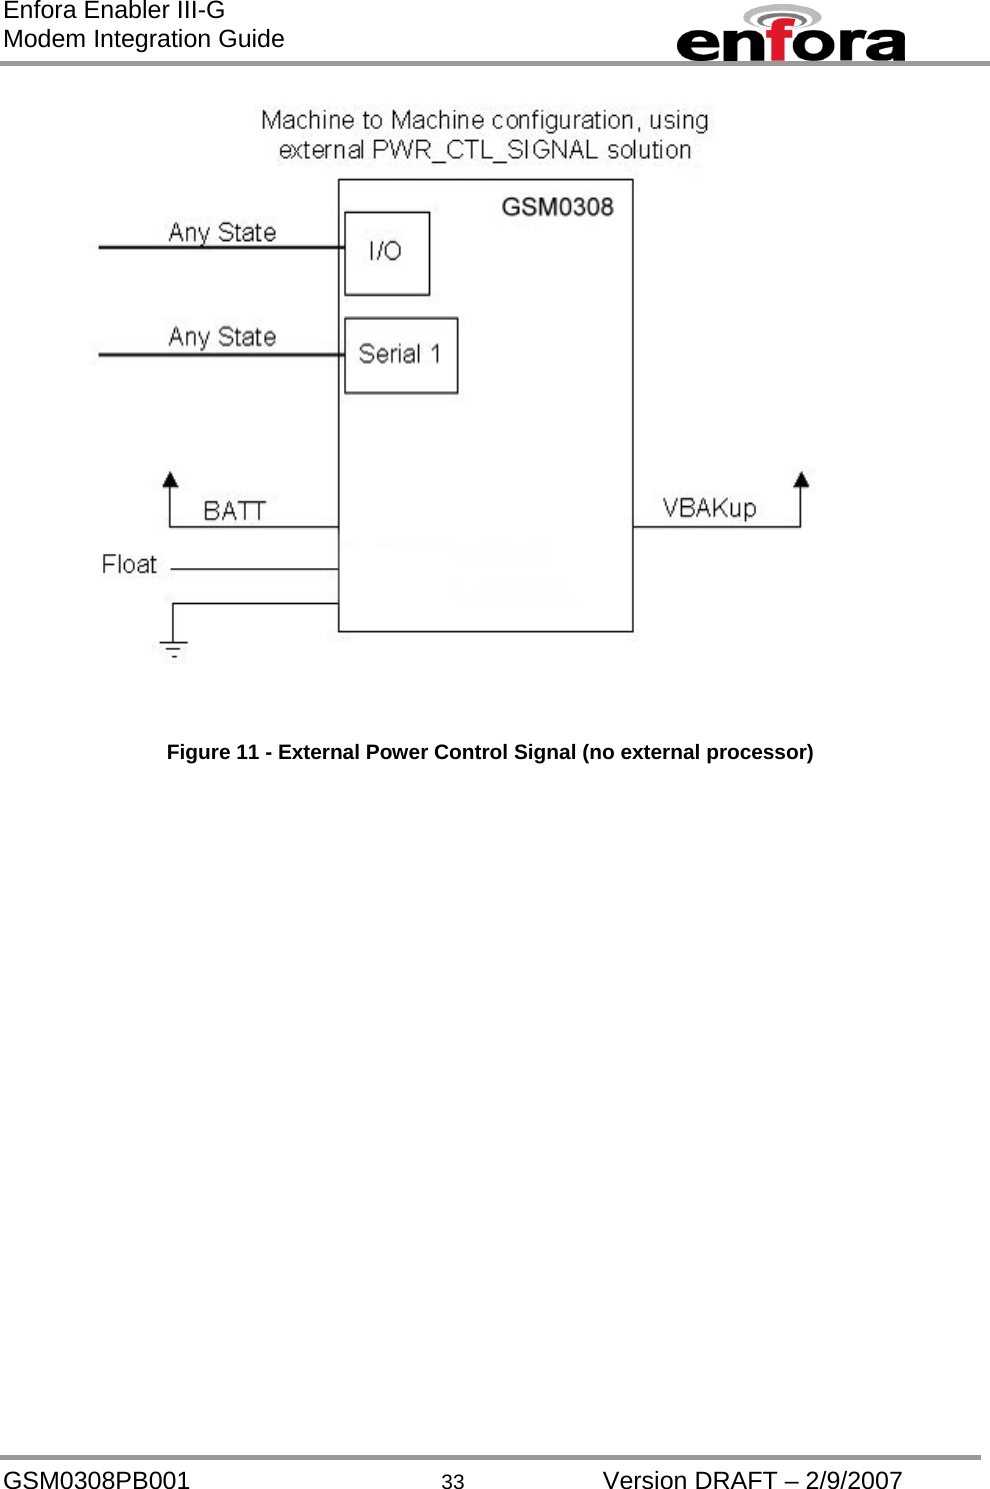 Enfora Enabler III-G Modem Integration Guide    Figure 11 - External Power Control Signal (no external processor) GSM0308PB001  33  Version DRAFT – 2/9/2007 